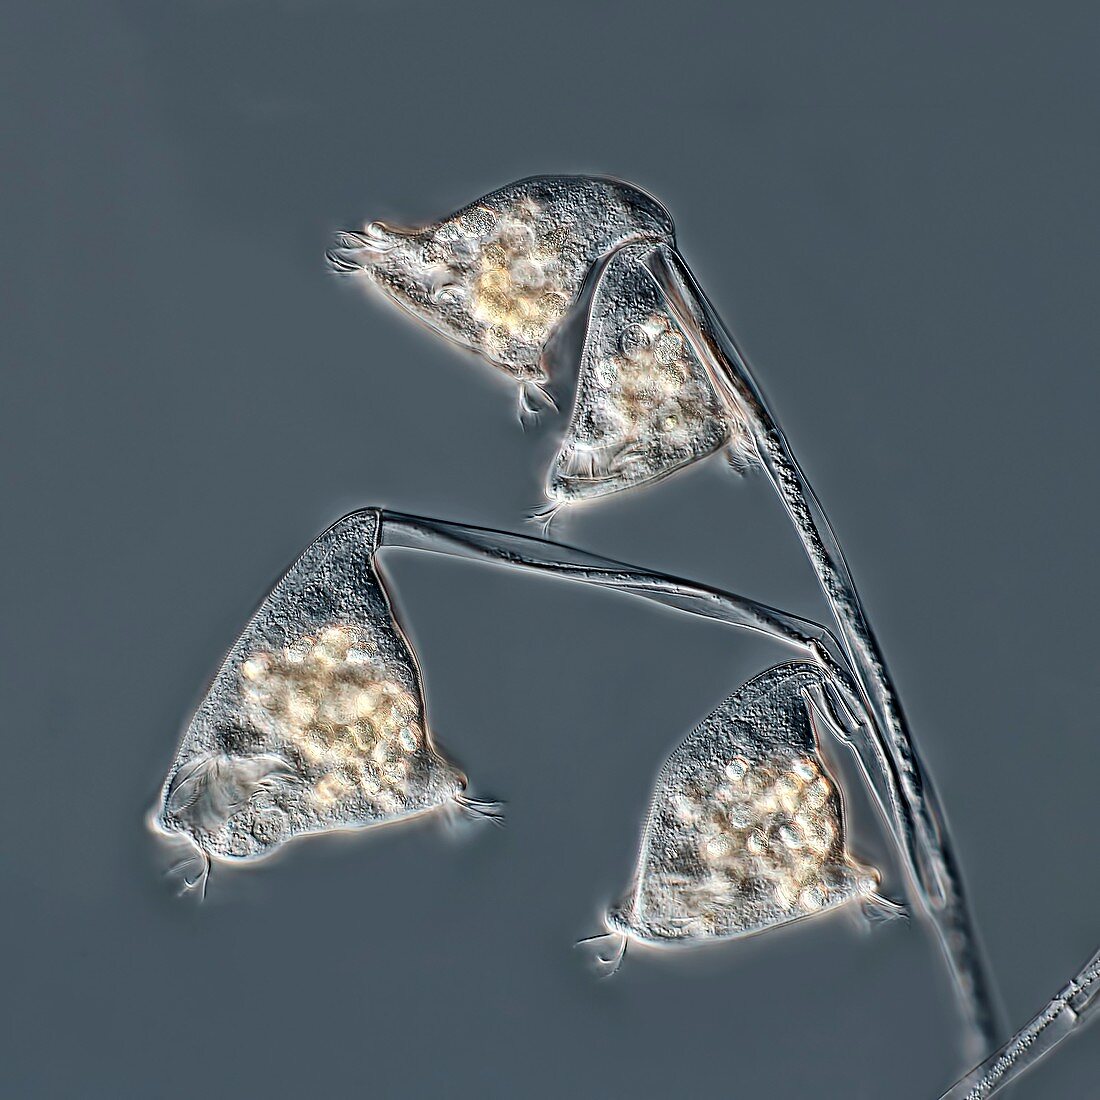 Carchesium protozoa colony, light micrograph